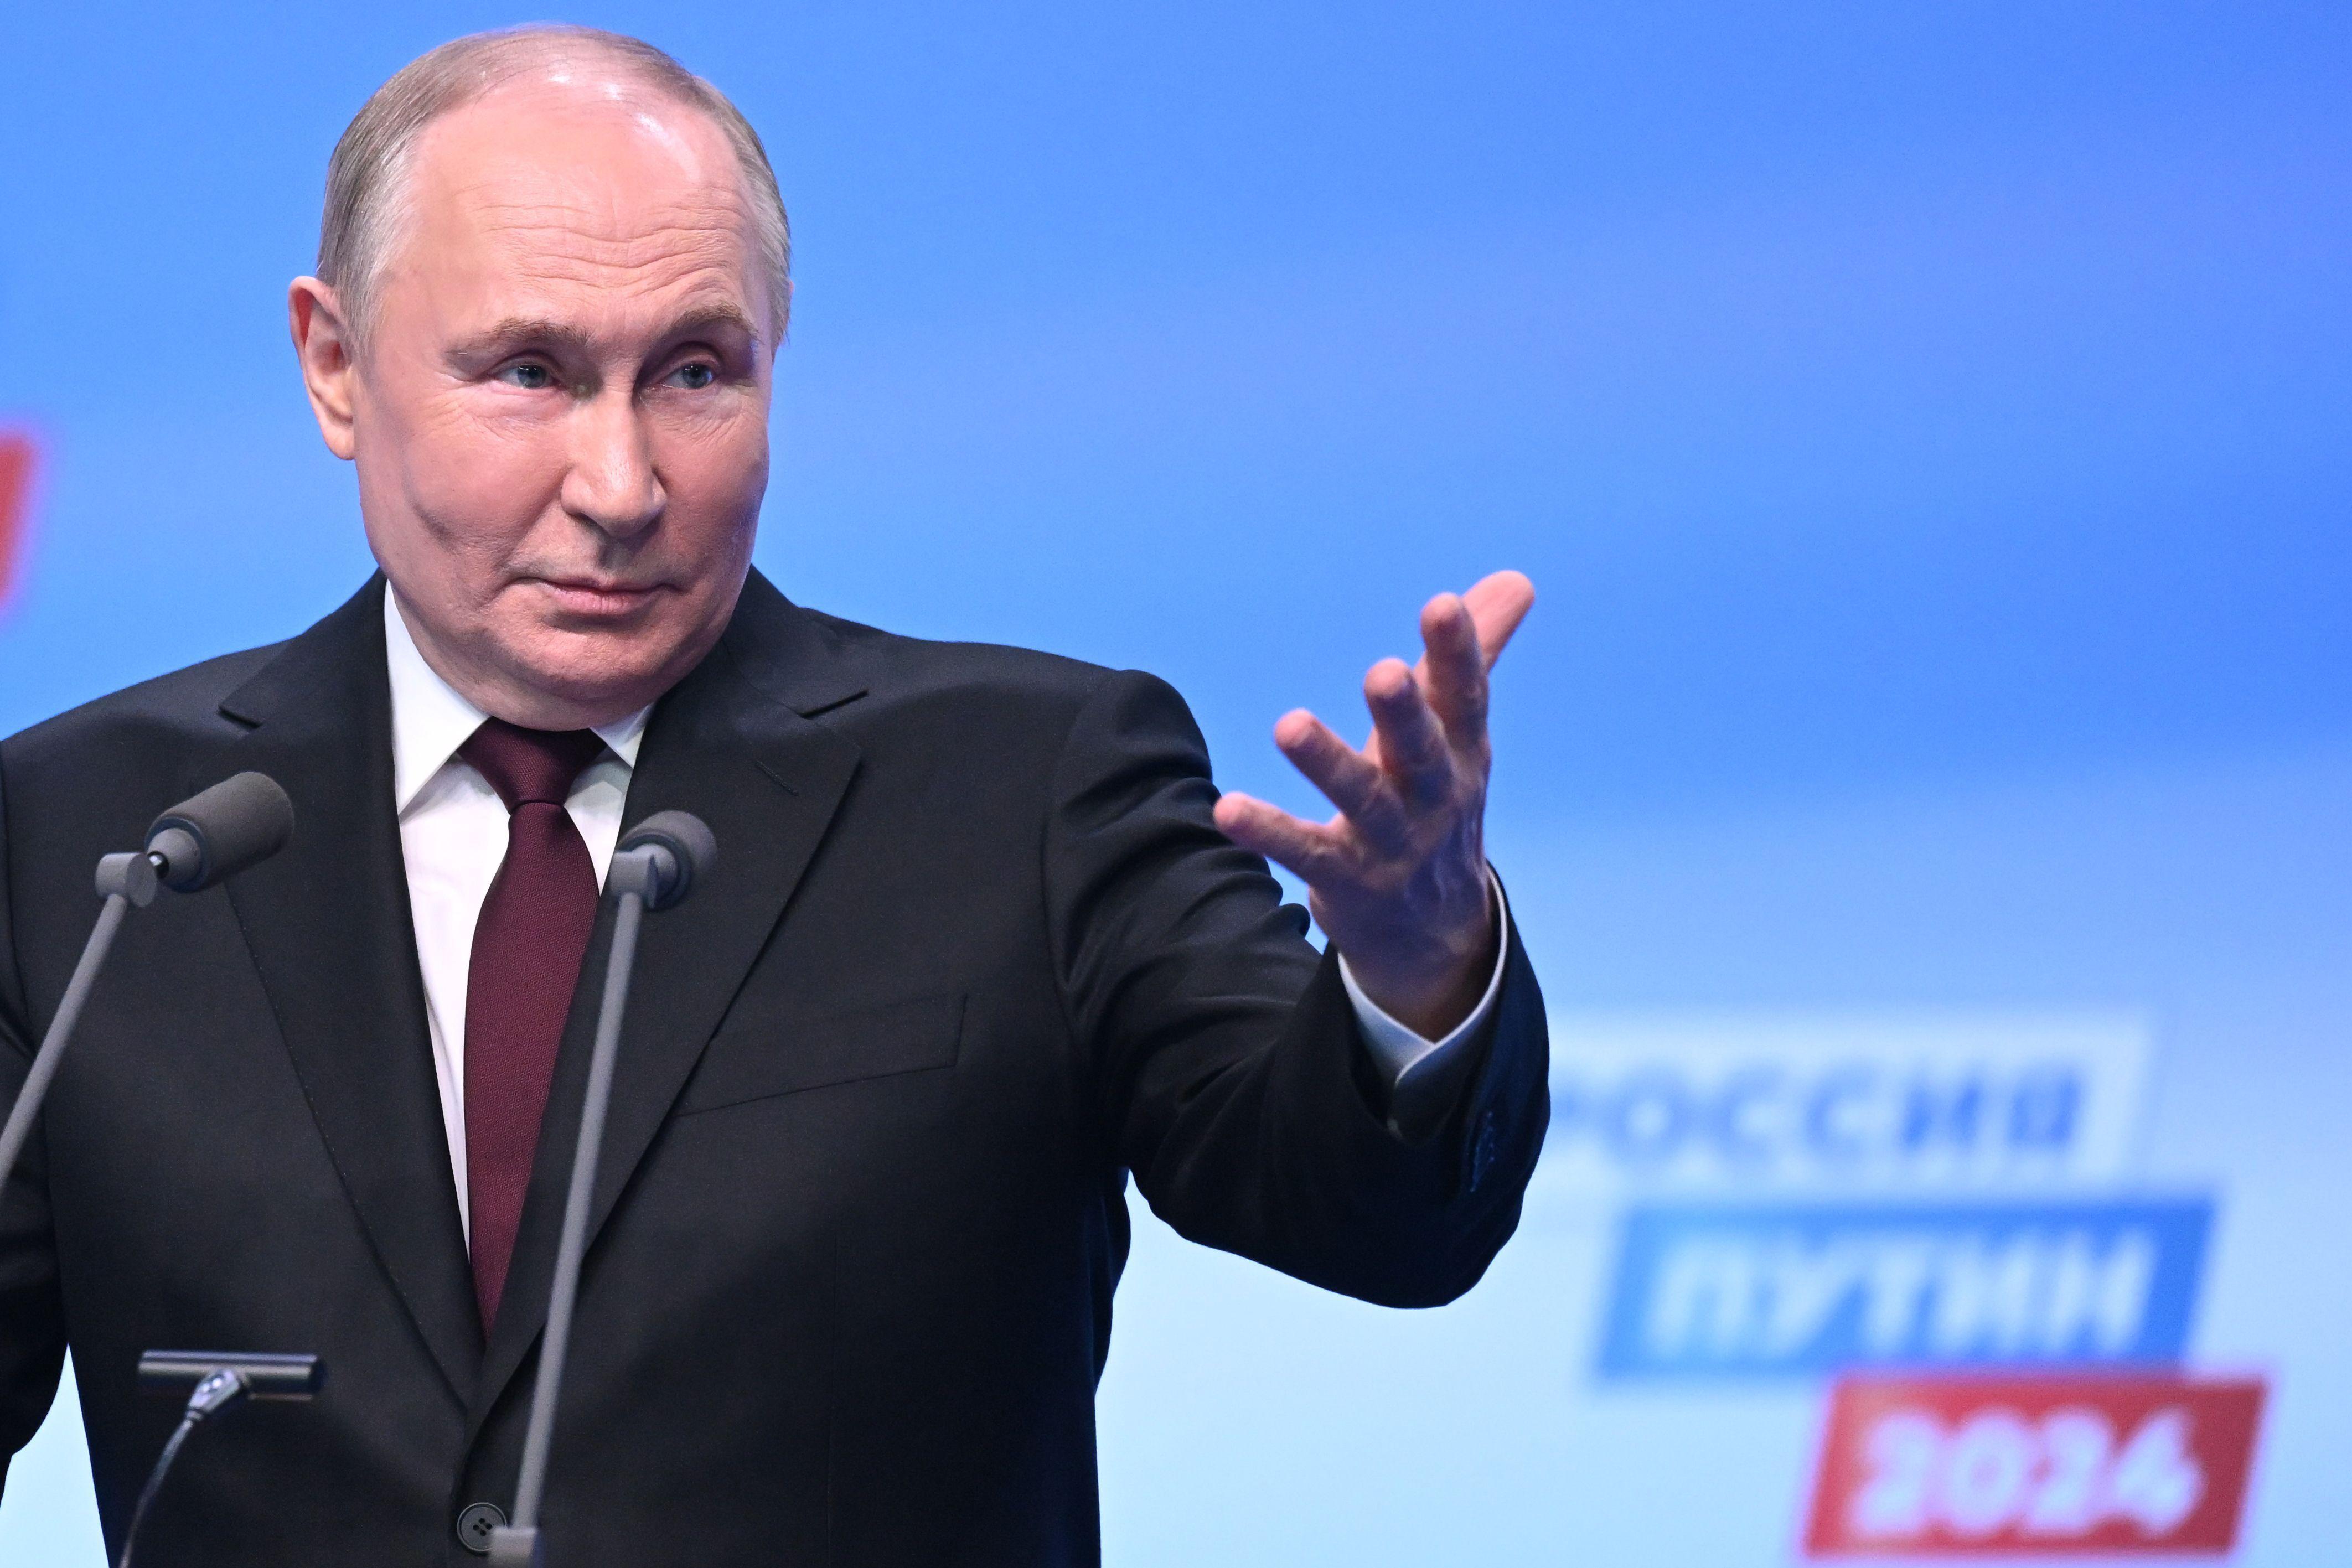 فاز بوتين بنسبة 87% من الأصوات في الانتخابات الروسية.